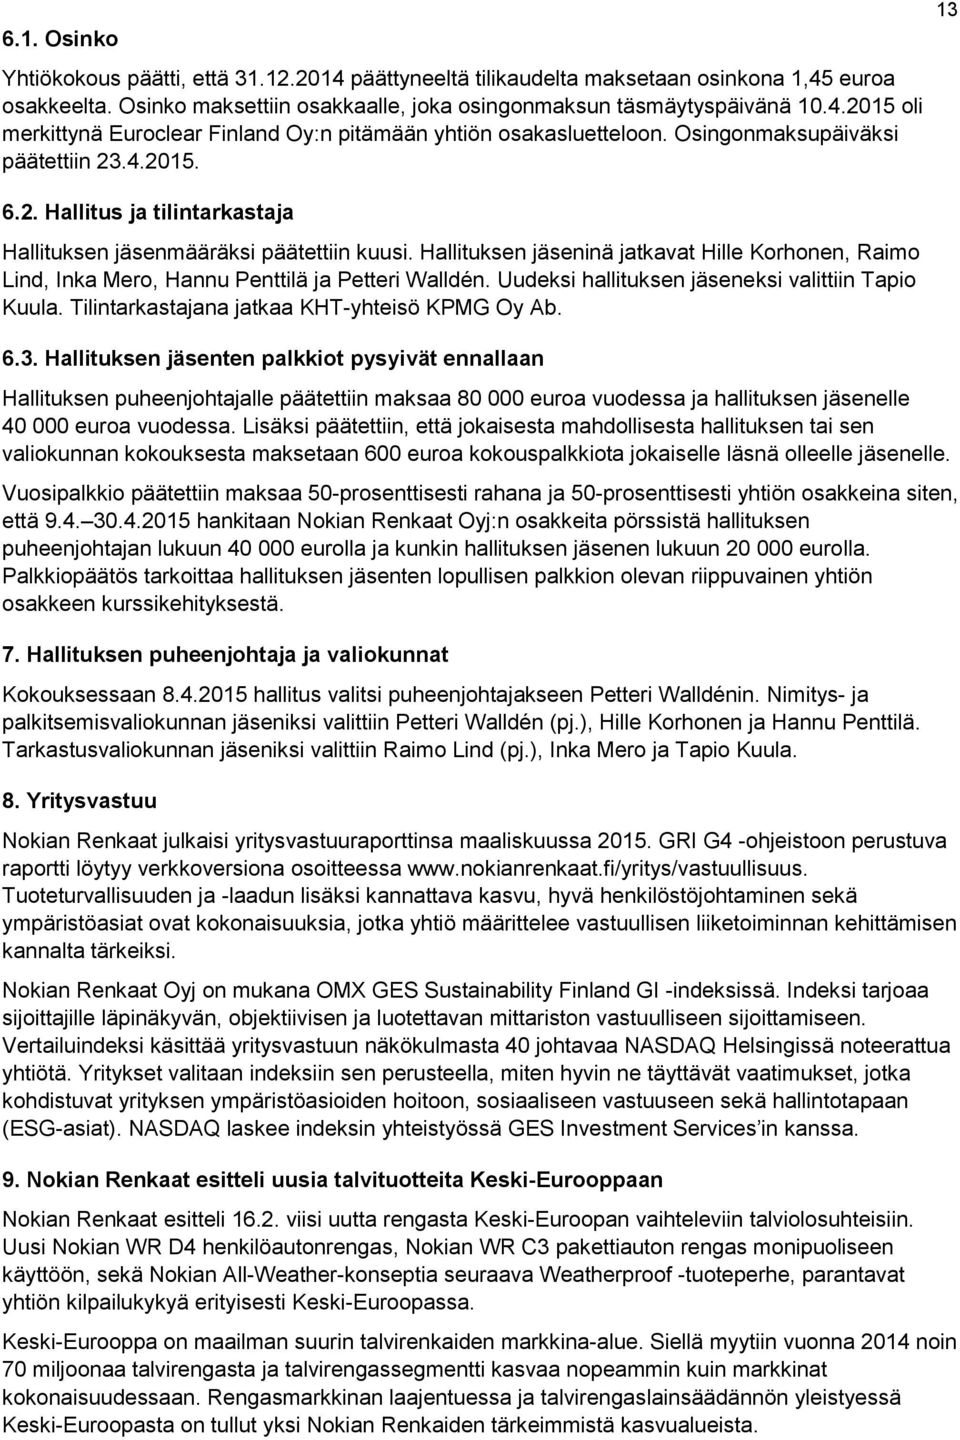 Hallituksen jäseninä jatkavat Hille Korhonen, Raimo Lind, Inka Mero, Hannu Penttilä ja Petteri Walldén. Uudeksi hallituksen jäseneksi valittiin Tapio Kuula.